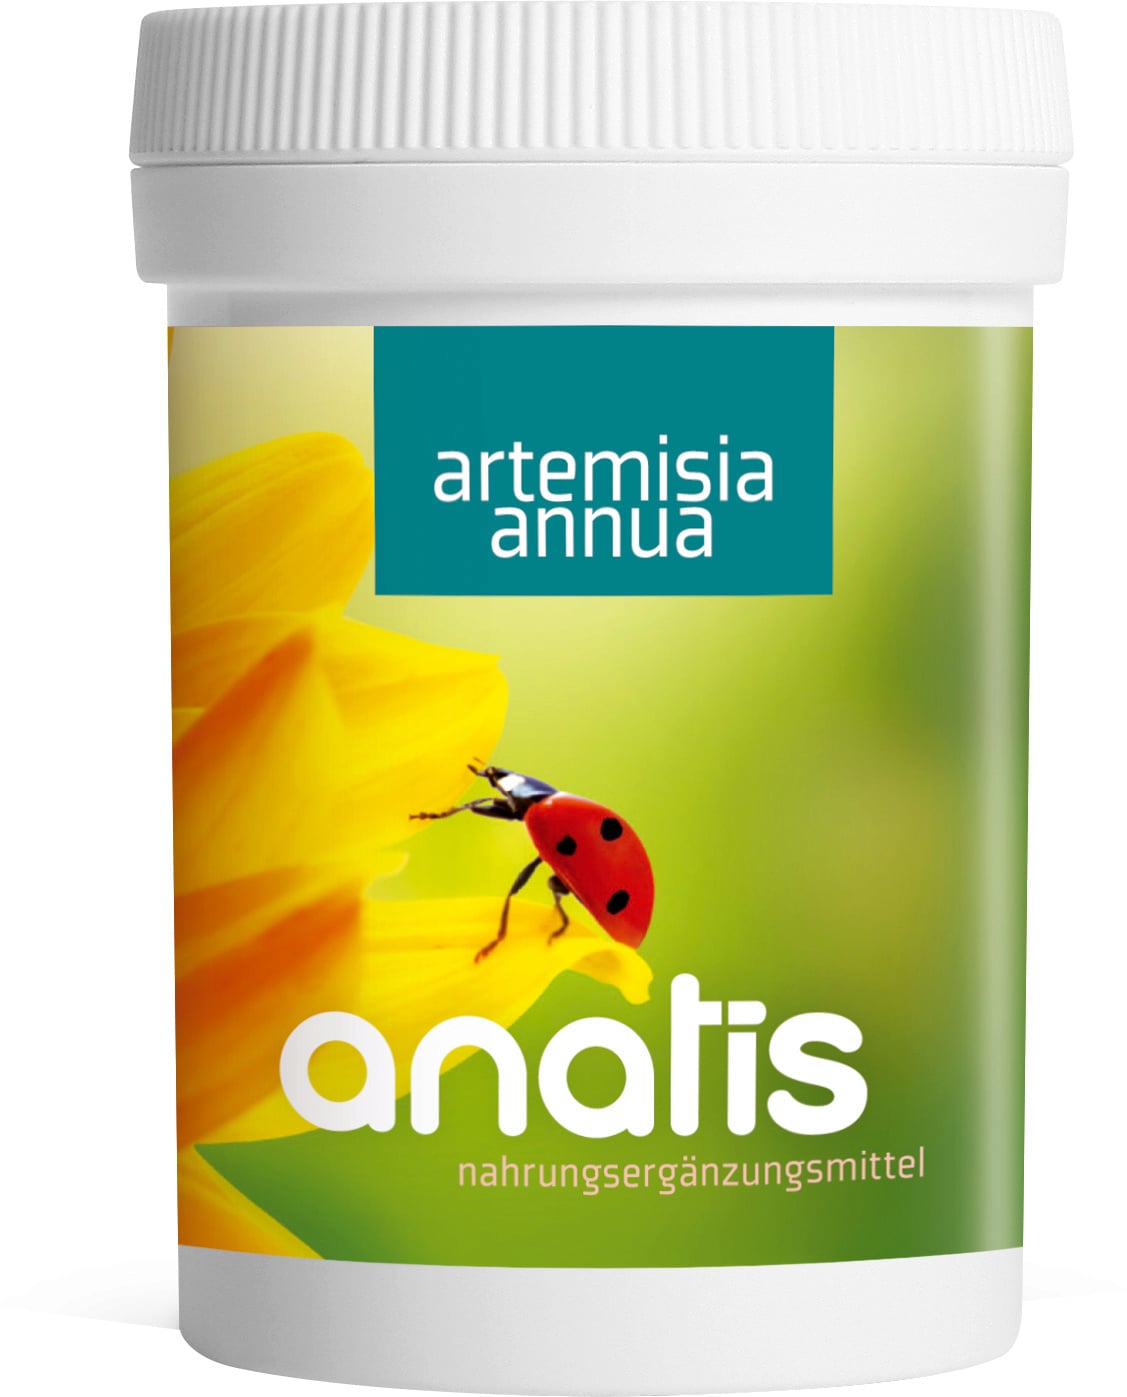 anatis Naturprodukte Artemisia annua